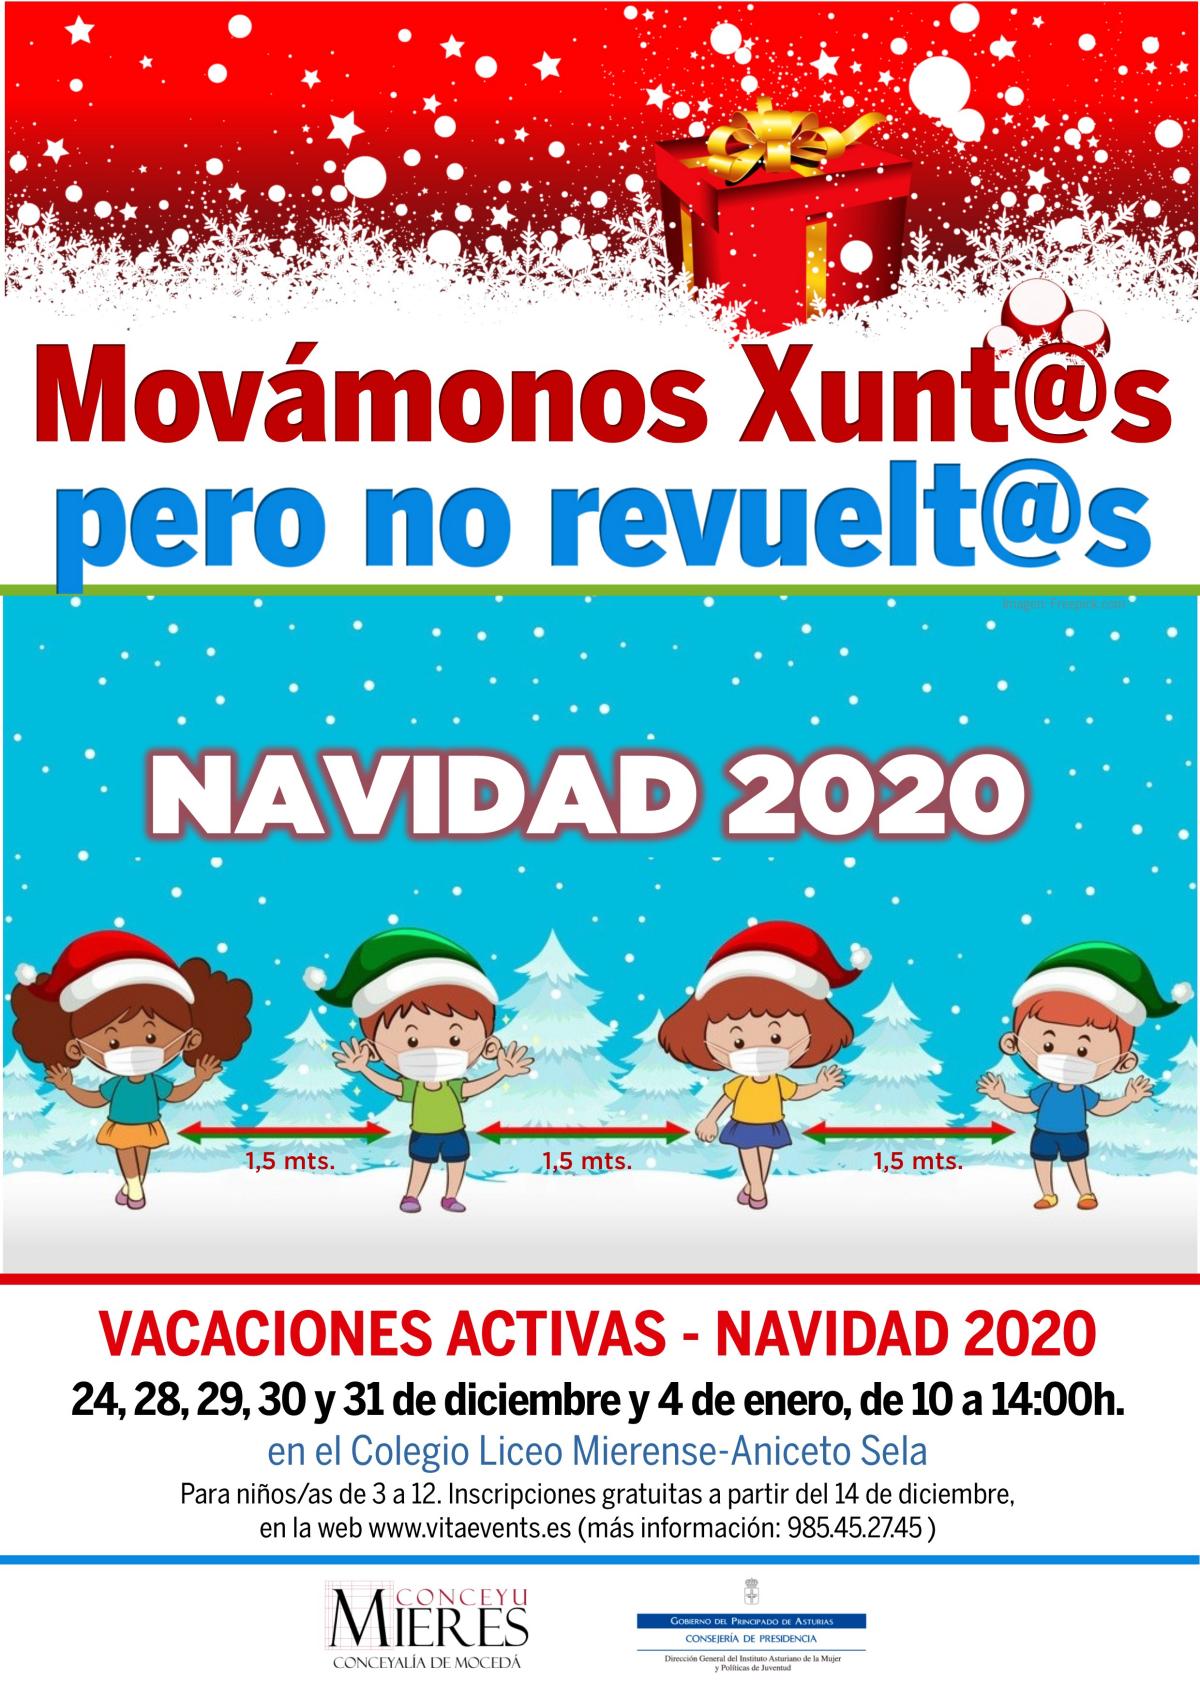 Movamonos Xuntos Navidad 2020 Vector De Mano Creado Por Freepik Www.freepik.es